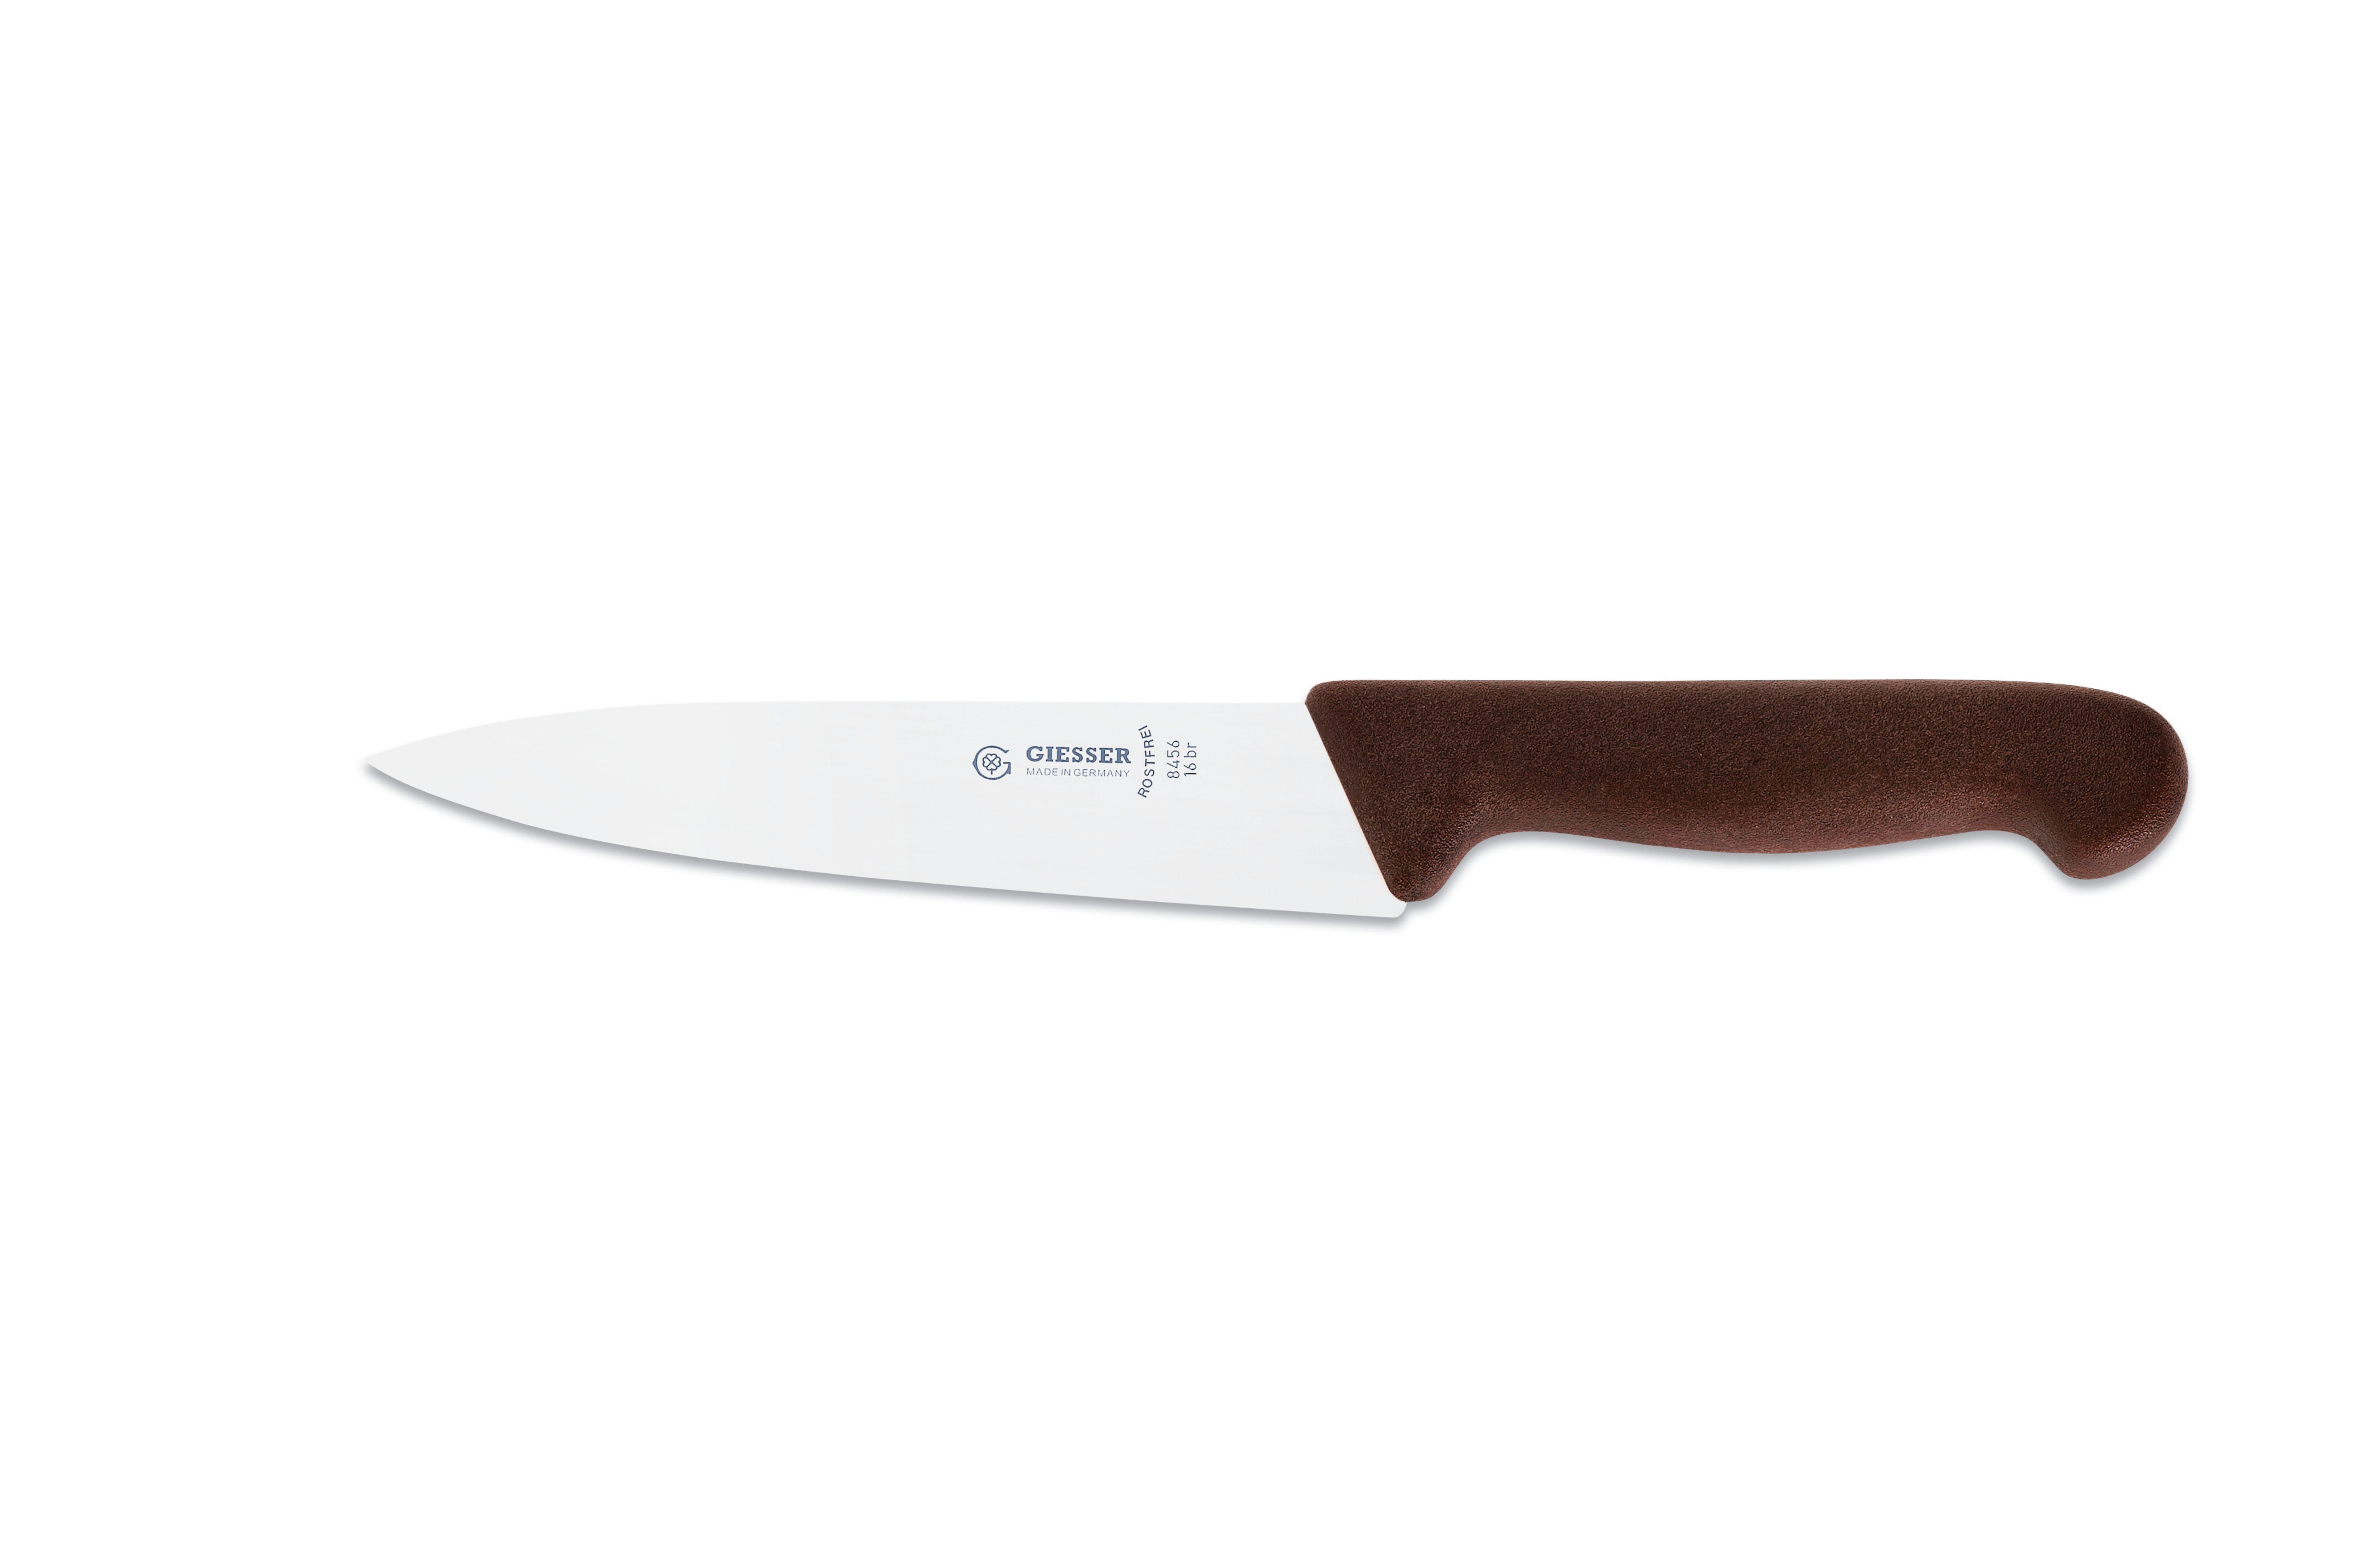 Giesser Messer Kochmesser Küchenmesser 8456, schmale, mittelspitze Klinge, scharf Handabzug, Ideal für jede Küche braun